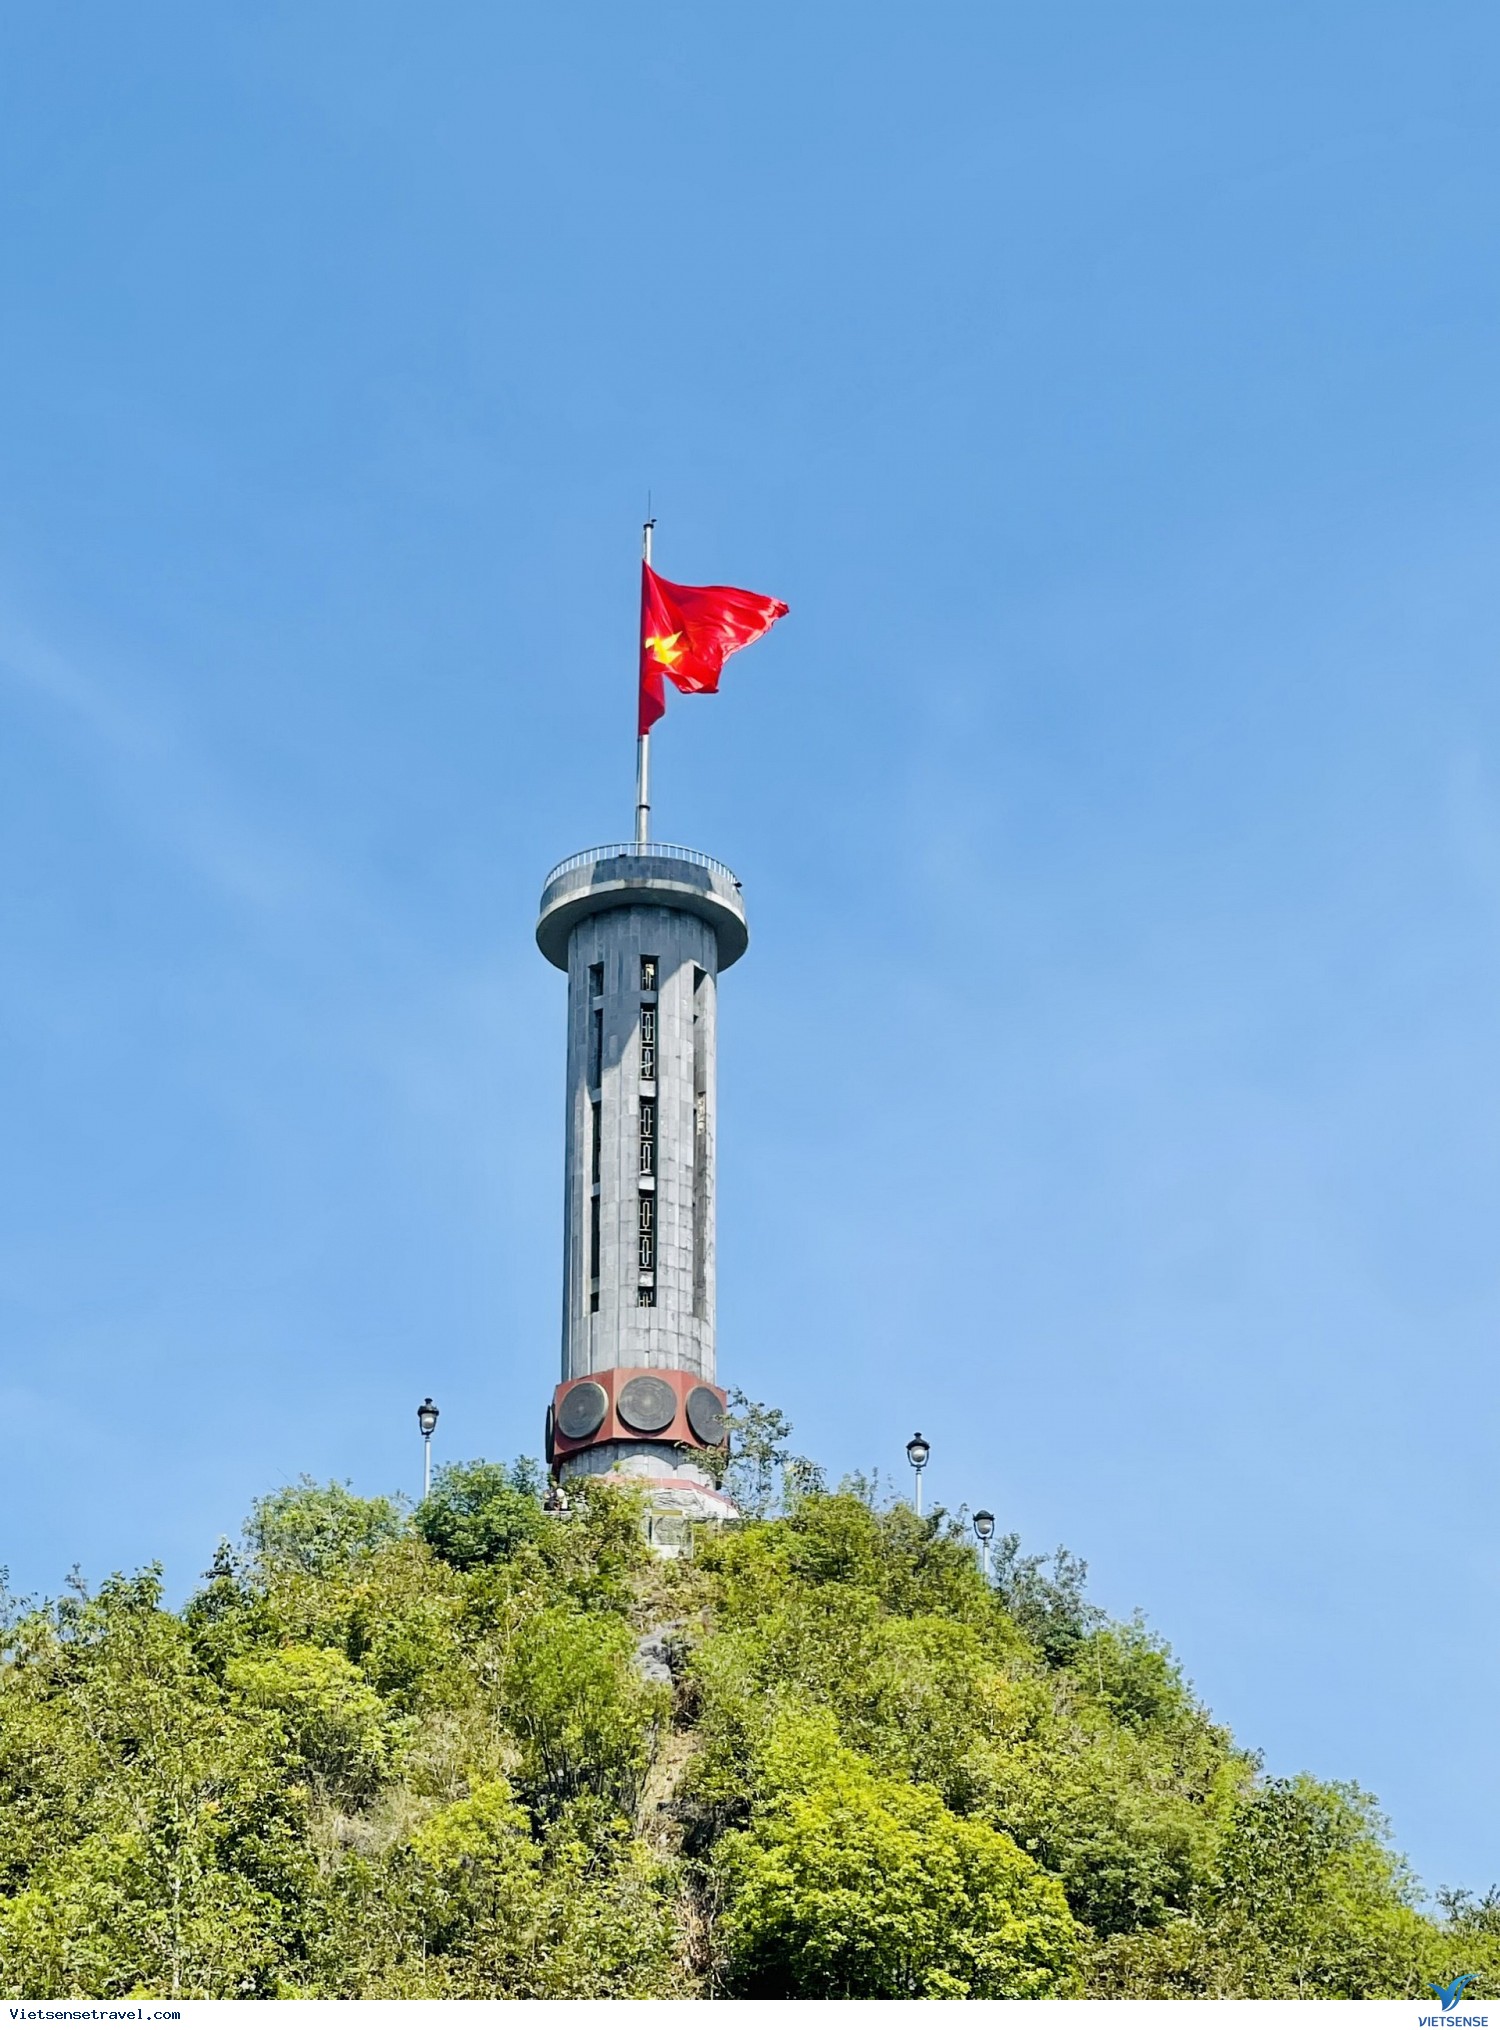 Cột cờ Lũng Cú:
Khi nhắc đến cột cờ Lũng Cú, không thể không kể đến vẻ đẹp hoang sơ, hùng vĩ của núi rừng Tây Bắc Việt Nam. Được ví như một \